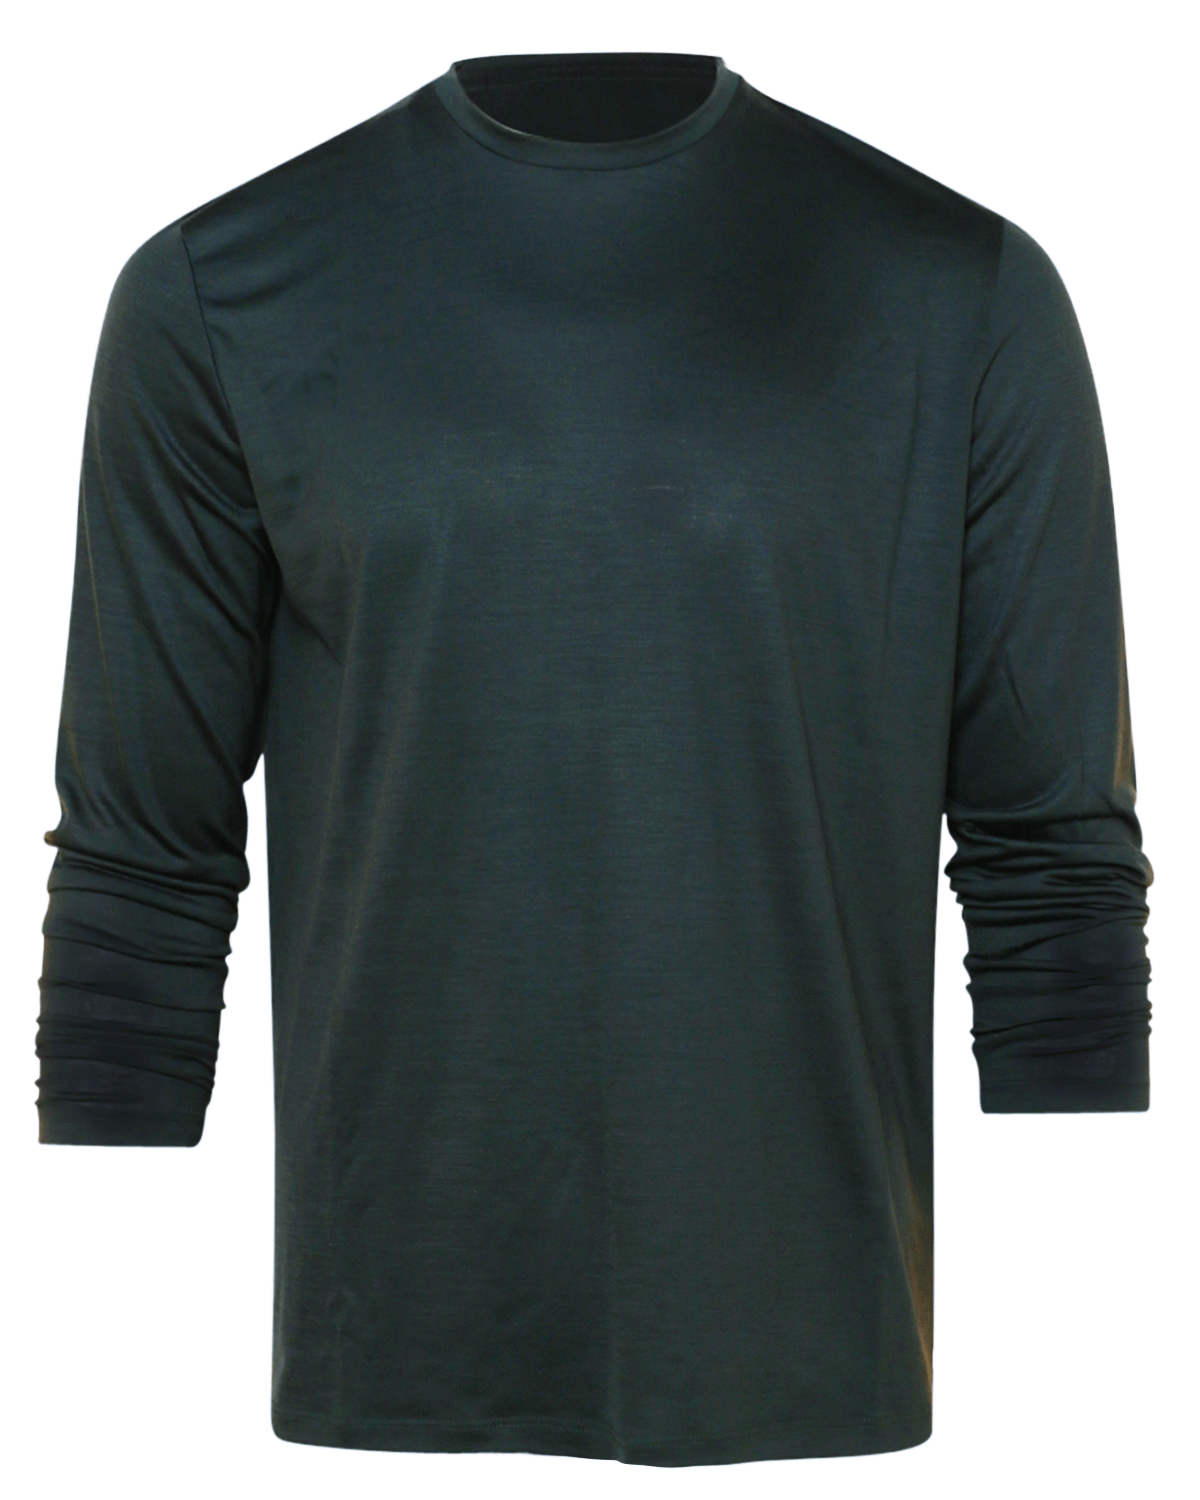 Green Long Sleeve Wool Jersey T-Shirt